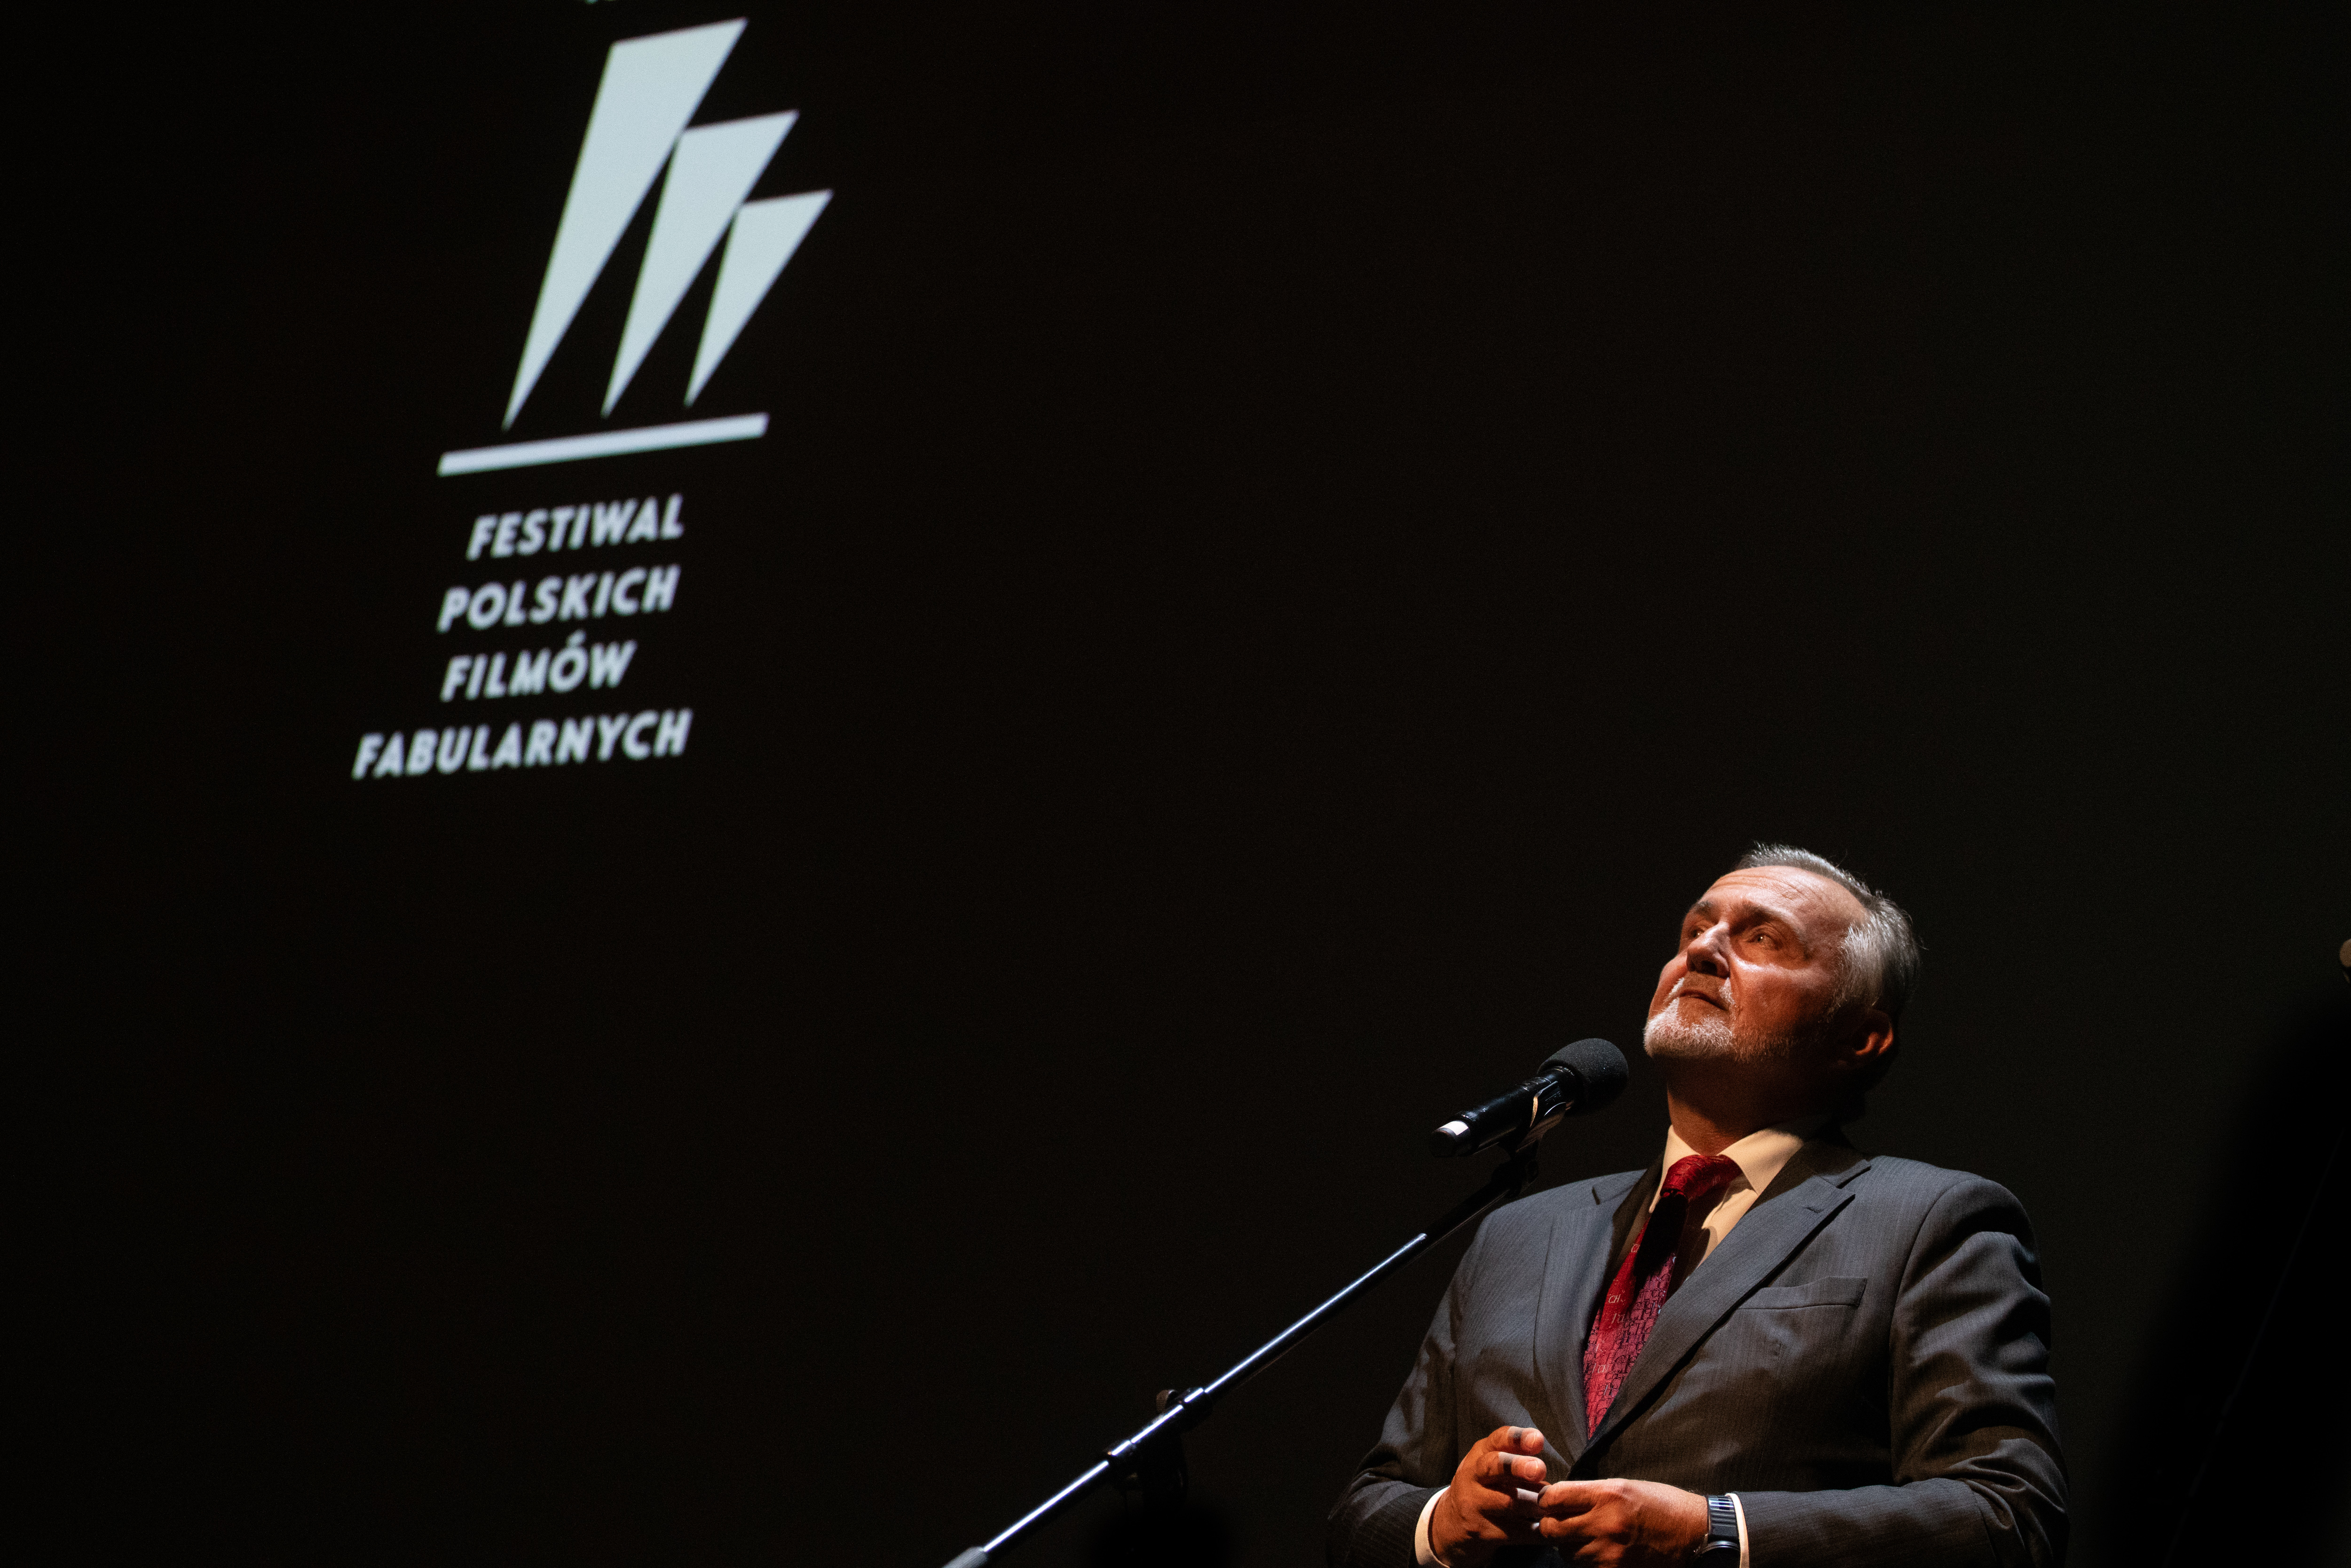 Ciemna scena Teatru Muzycznego, logo FPFF, Wojciech Szczurek przemawia przez mikrofon